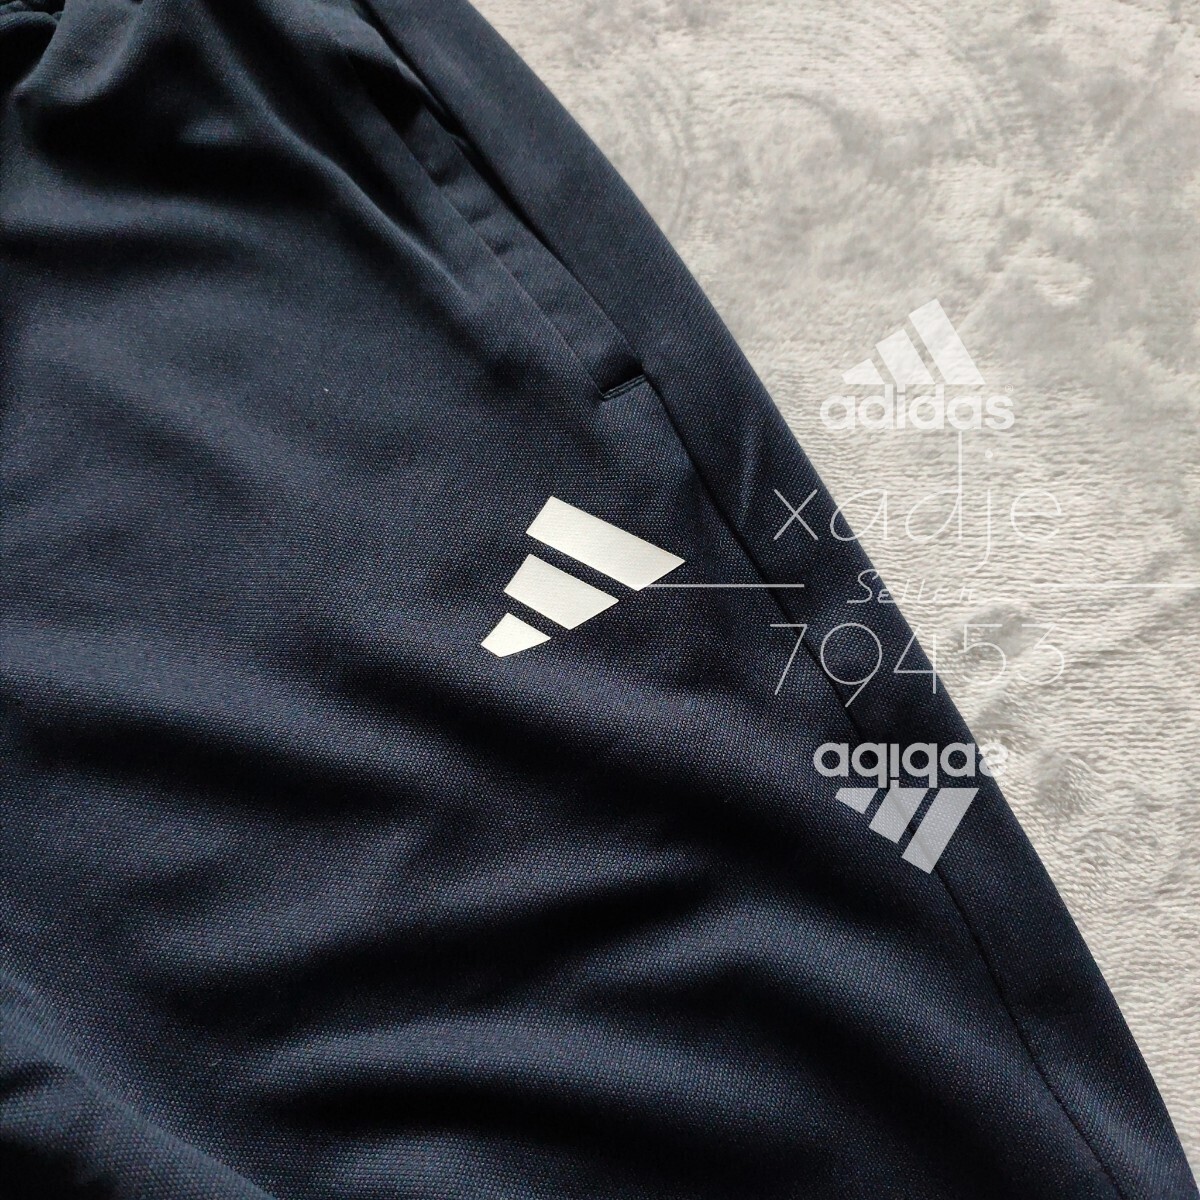 新品 正規品 adidas アディダス 上下セット セットアップ ジャージ ジャケット パンツ 紺 ネイビー 三本ライン 裾ファスナー付き 薄手 XL